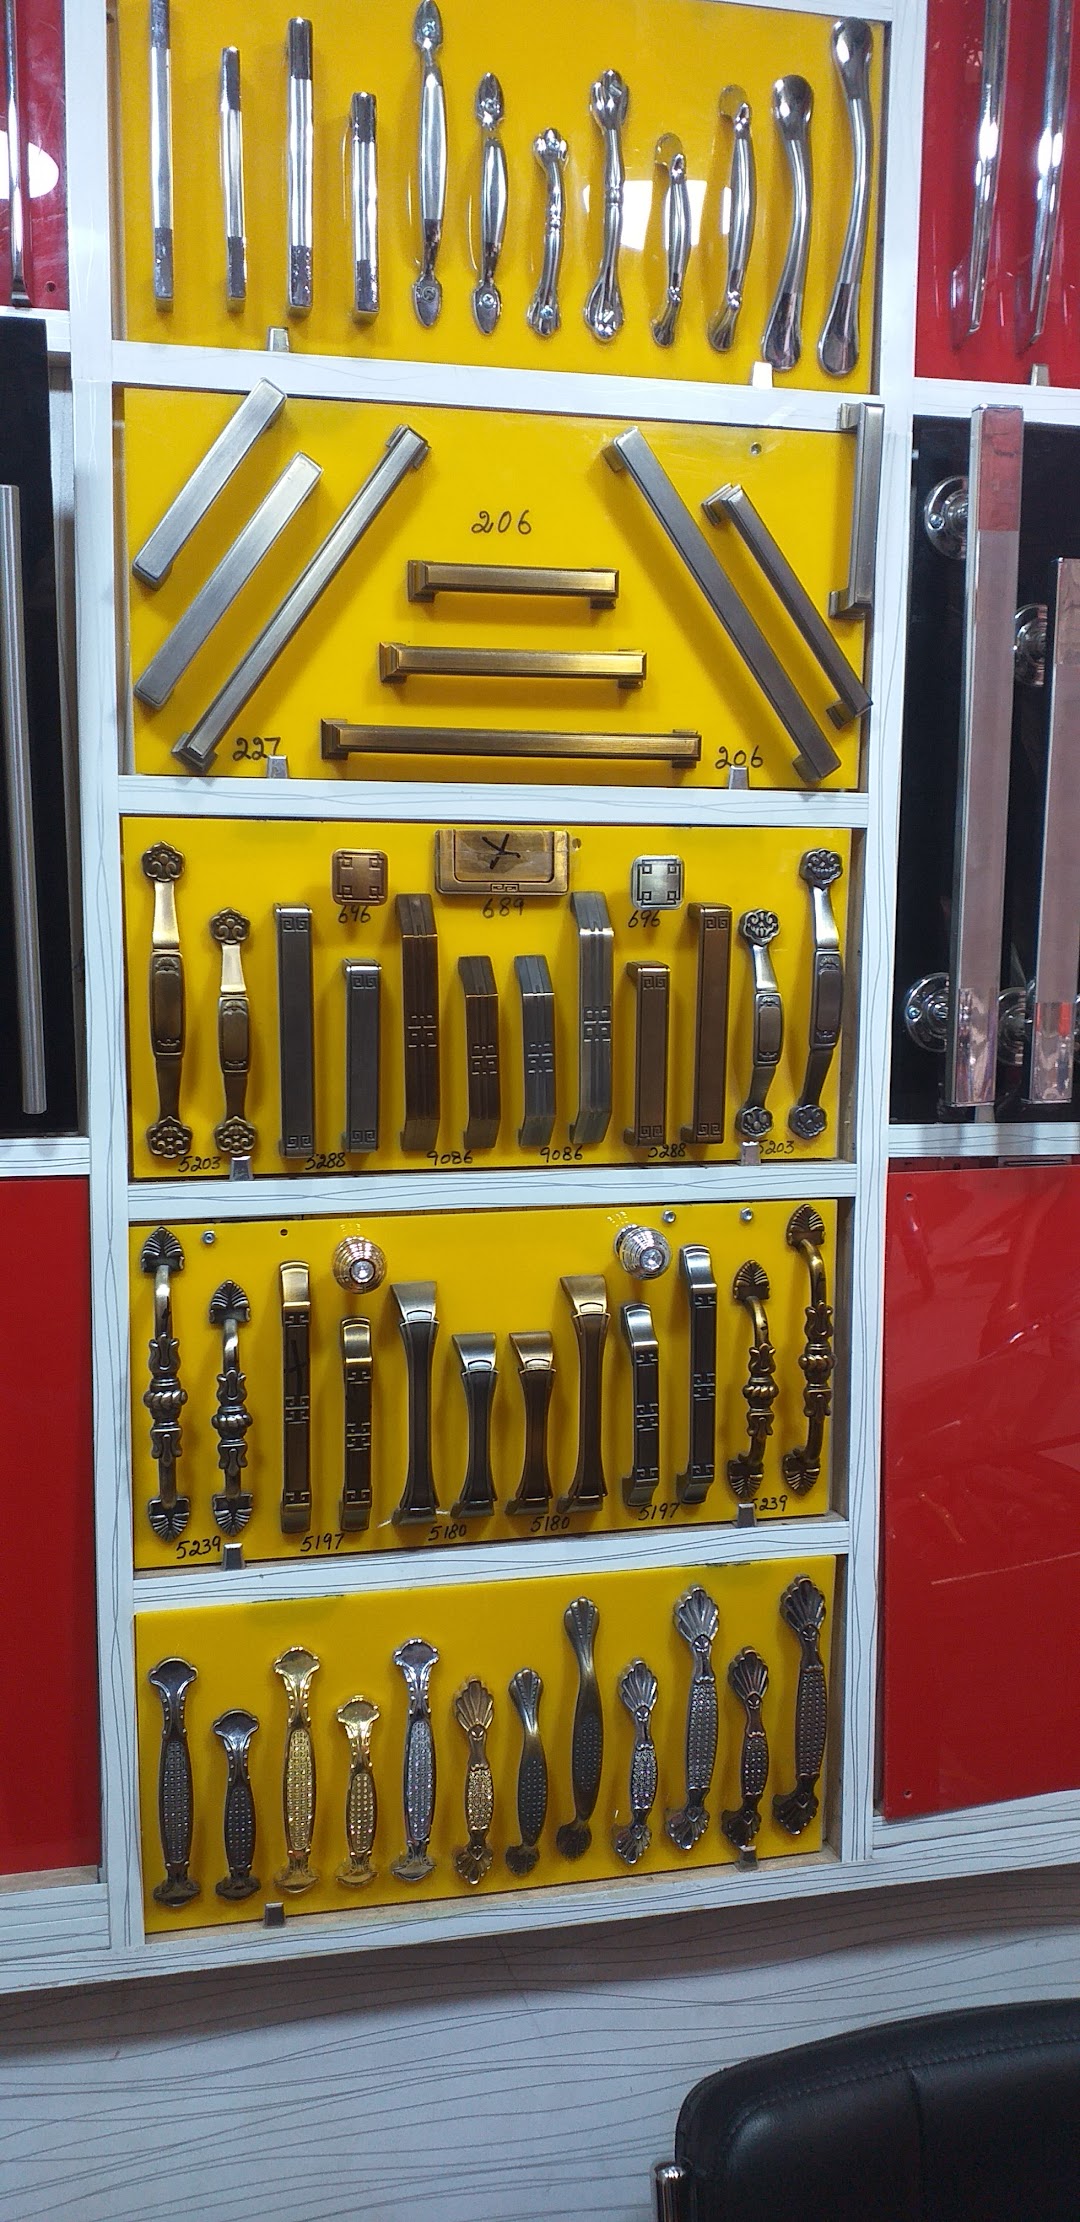 Haji bilal tools and hardware